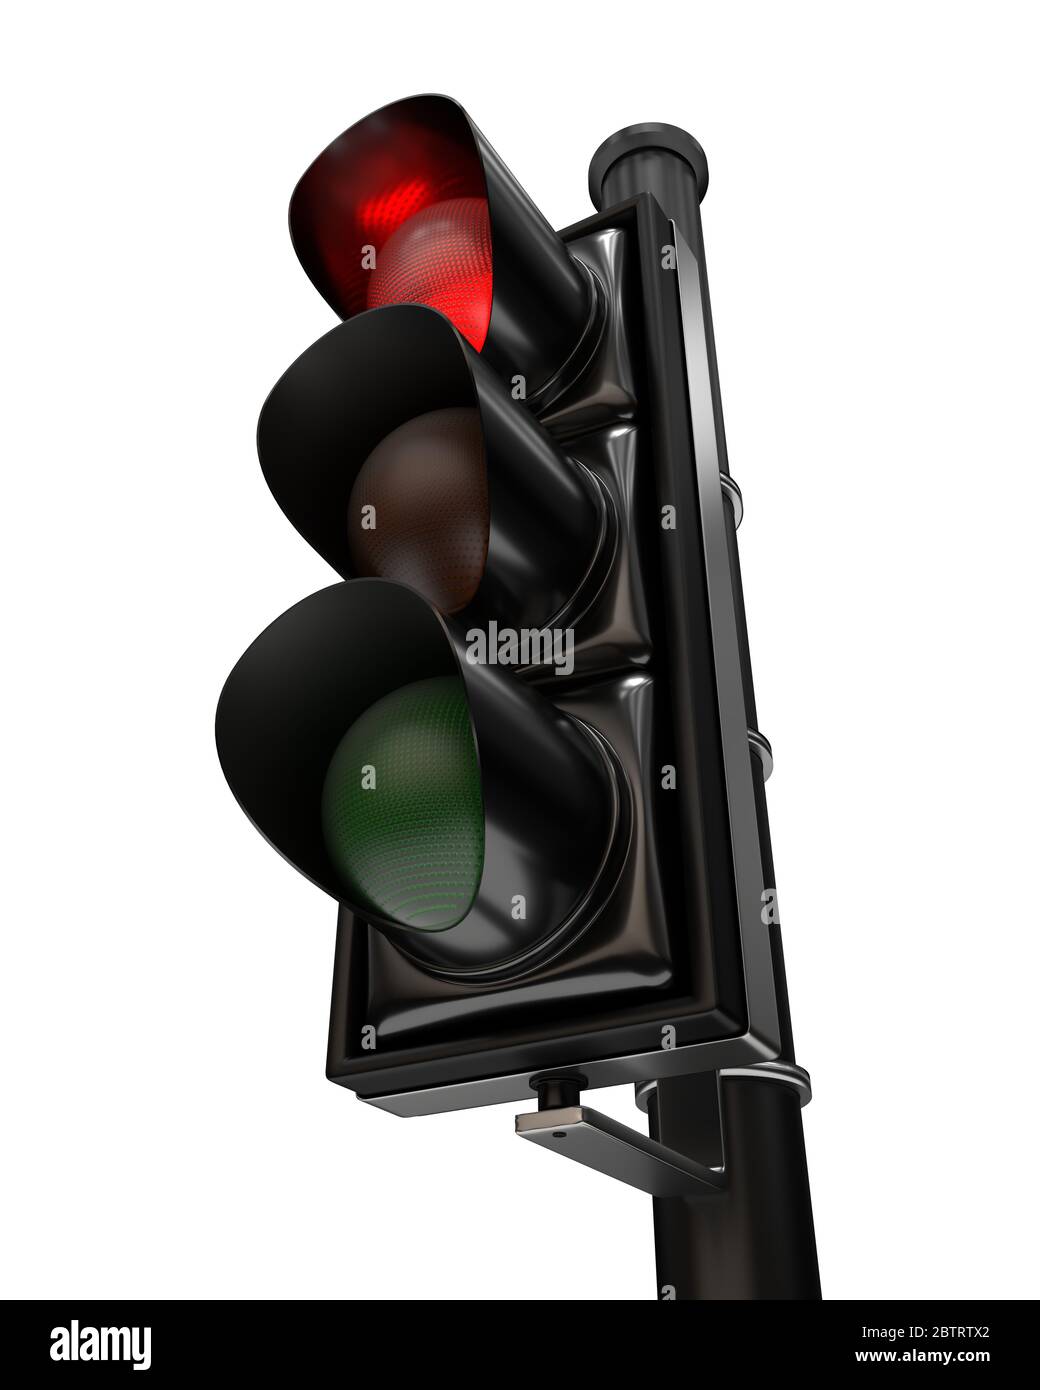 En primer plano en un semáforo, la luz roja está encendida, aislada sobre fondo blanco Foto de stock